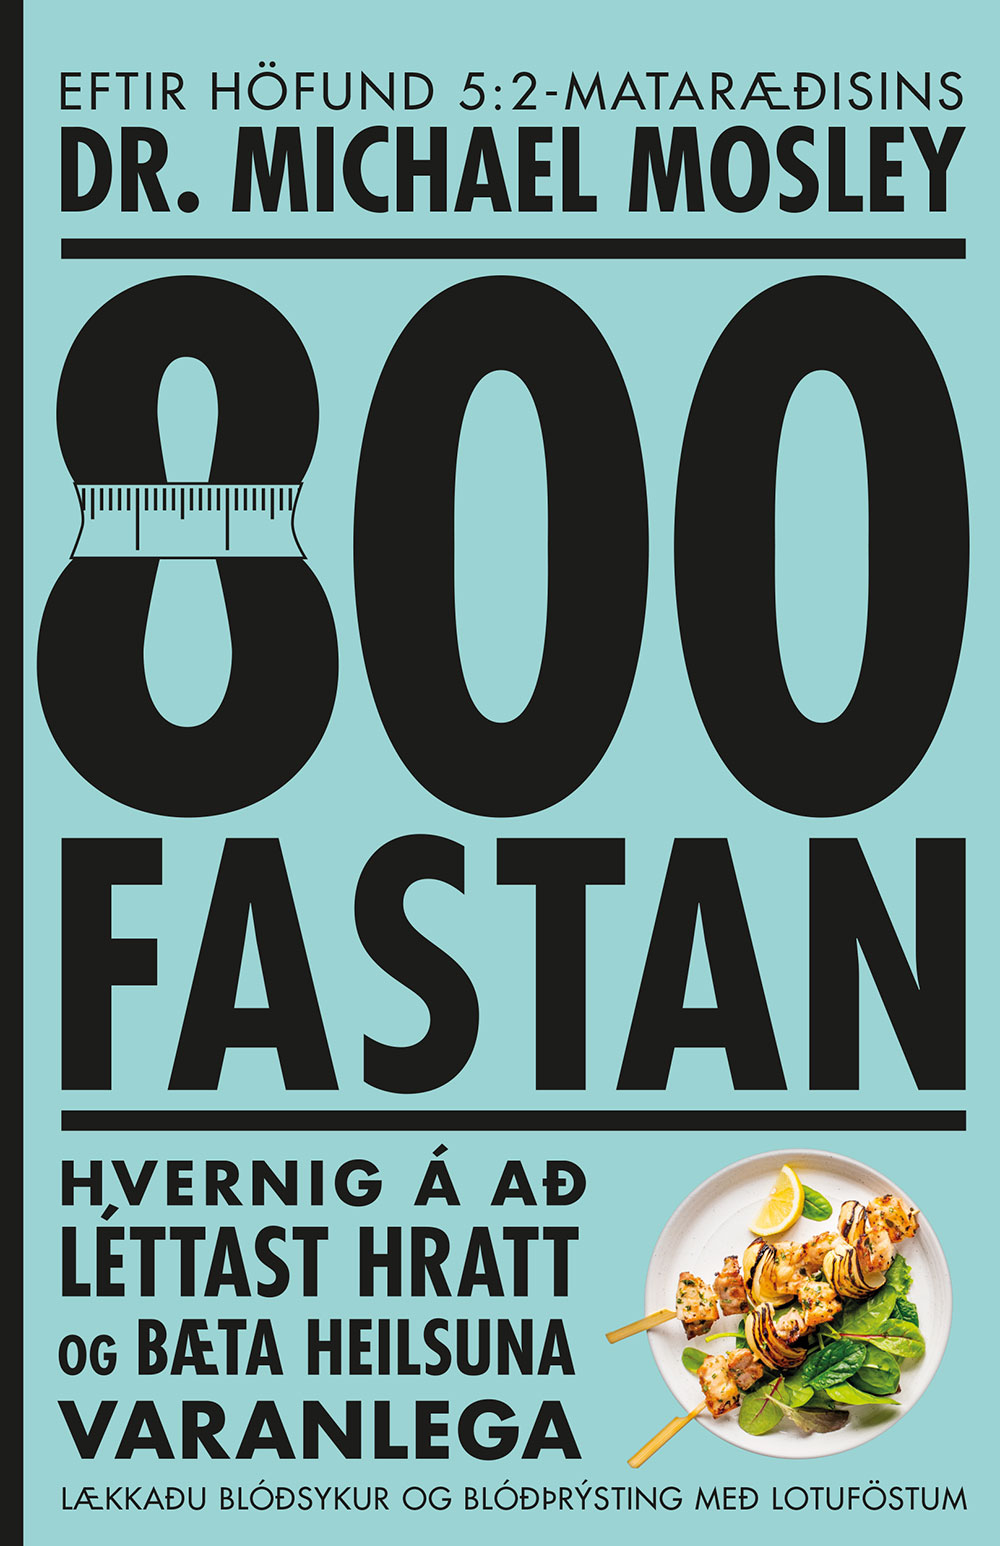 800 - fastan